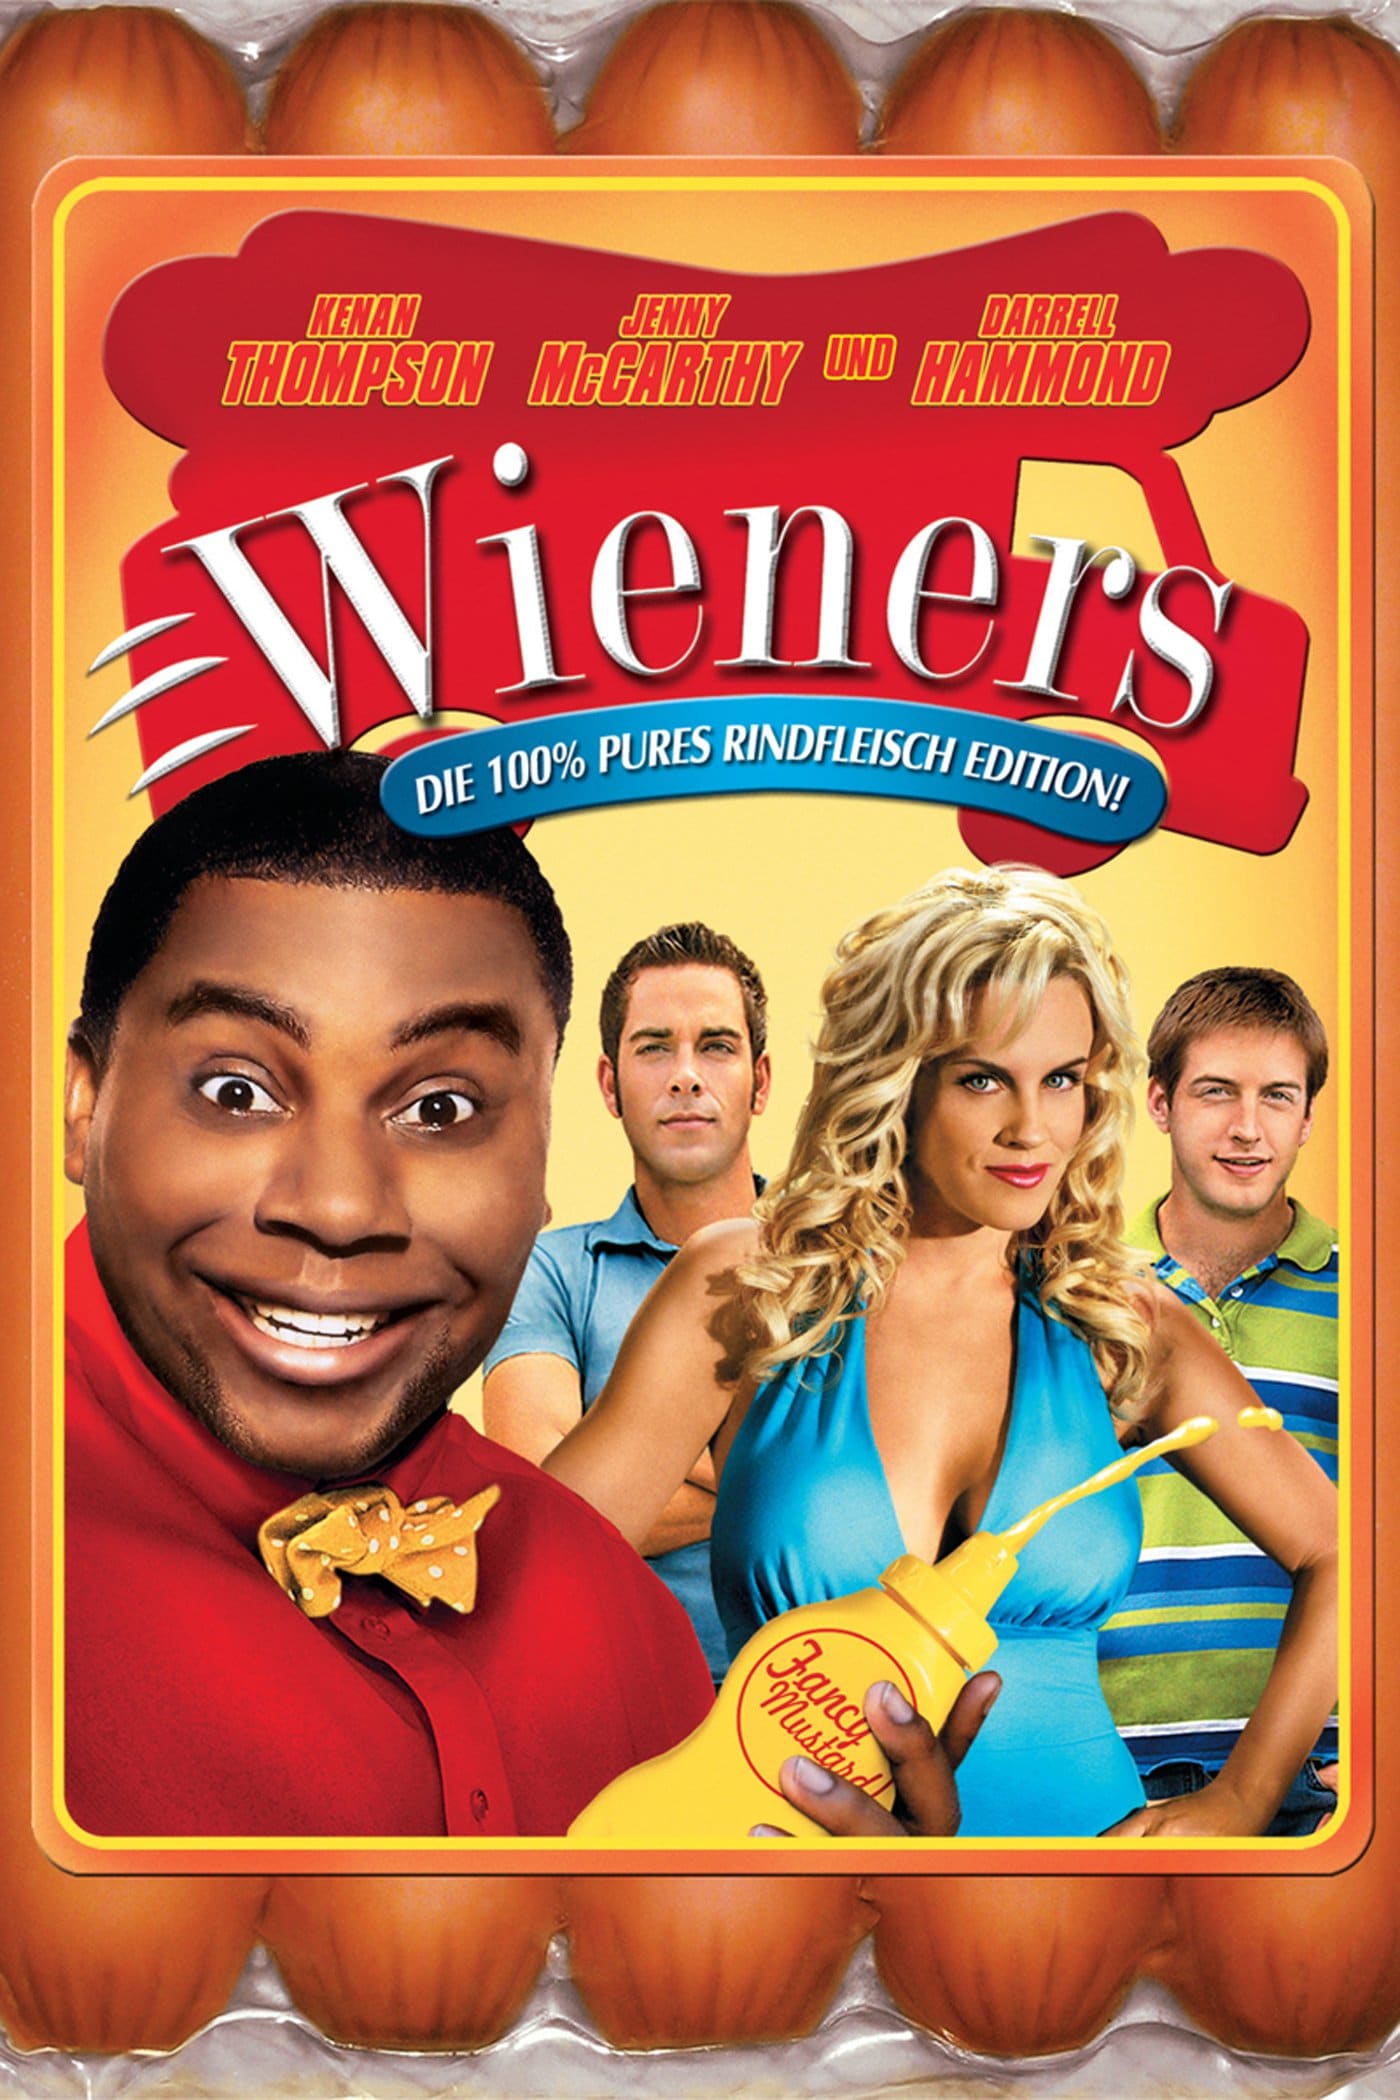 Plakat von "Wieners"